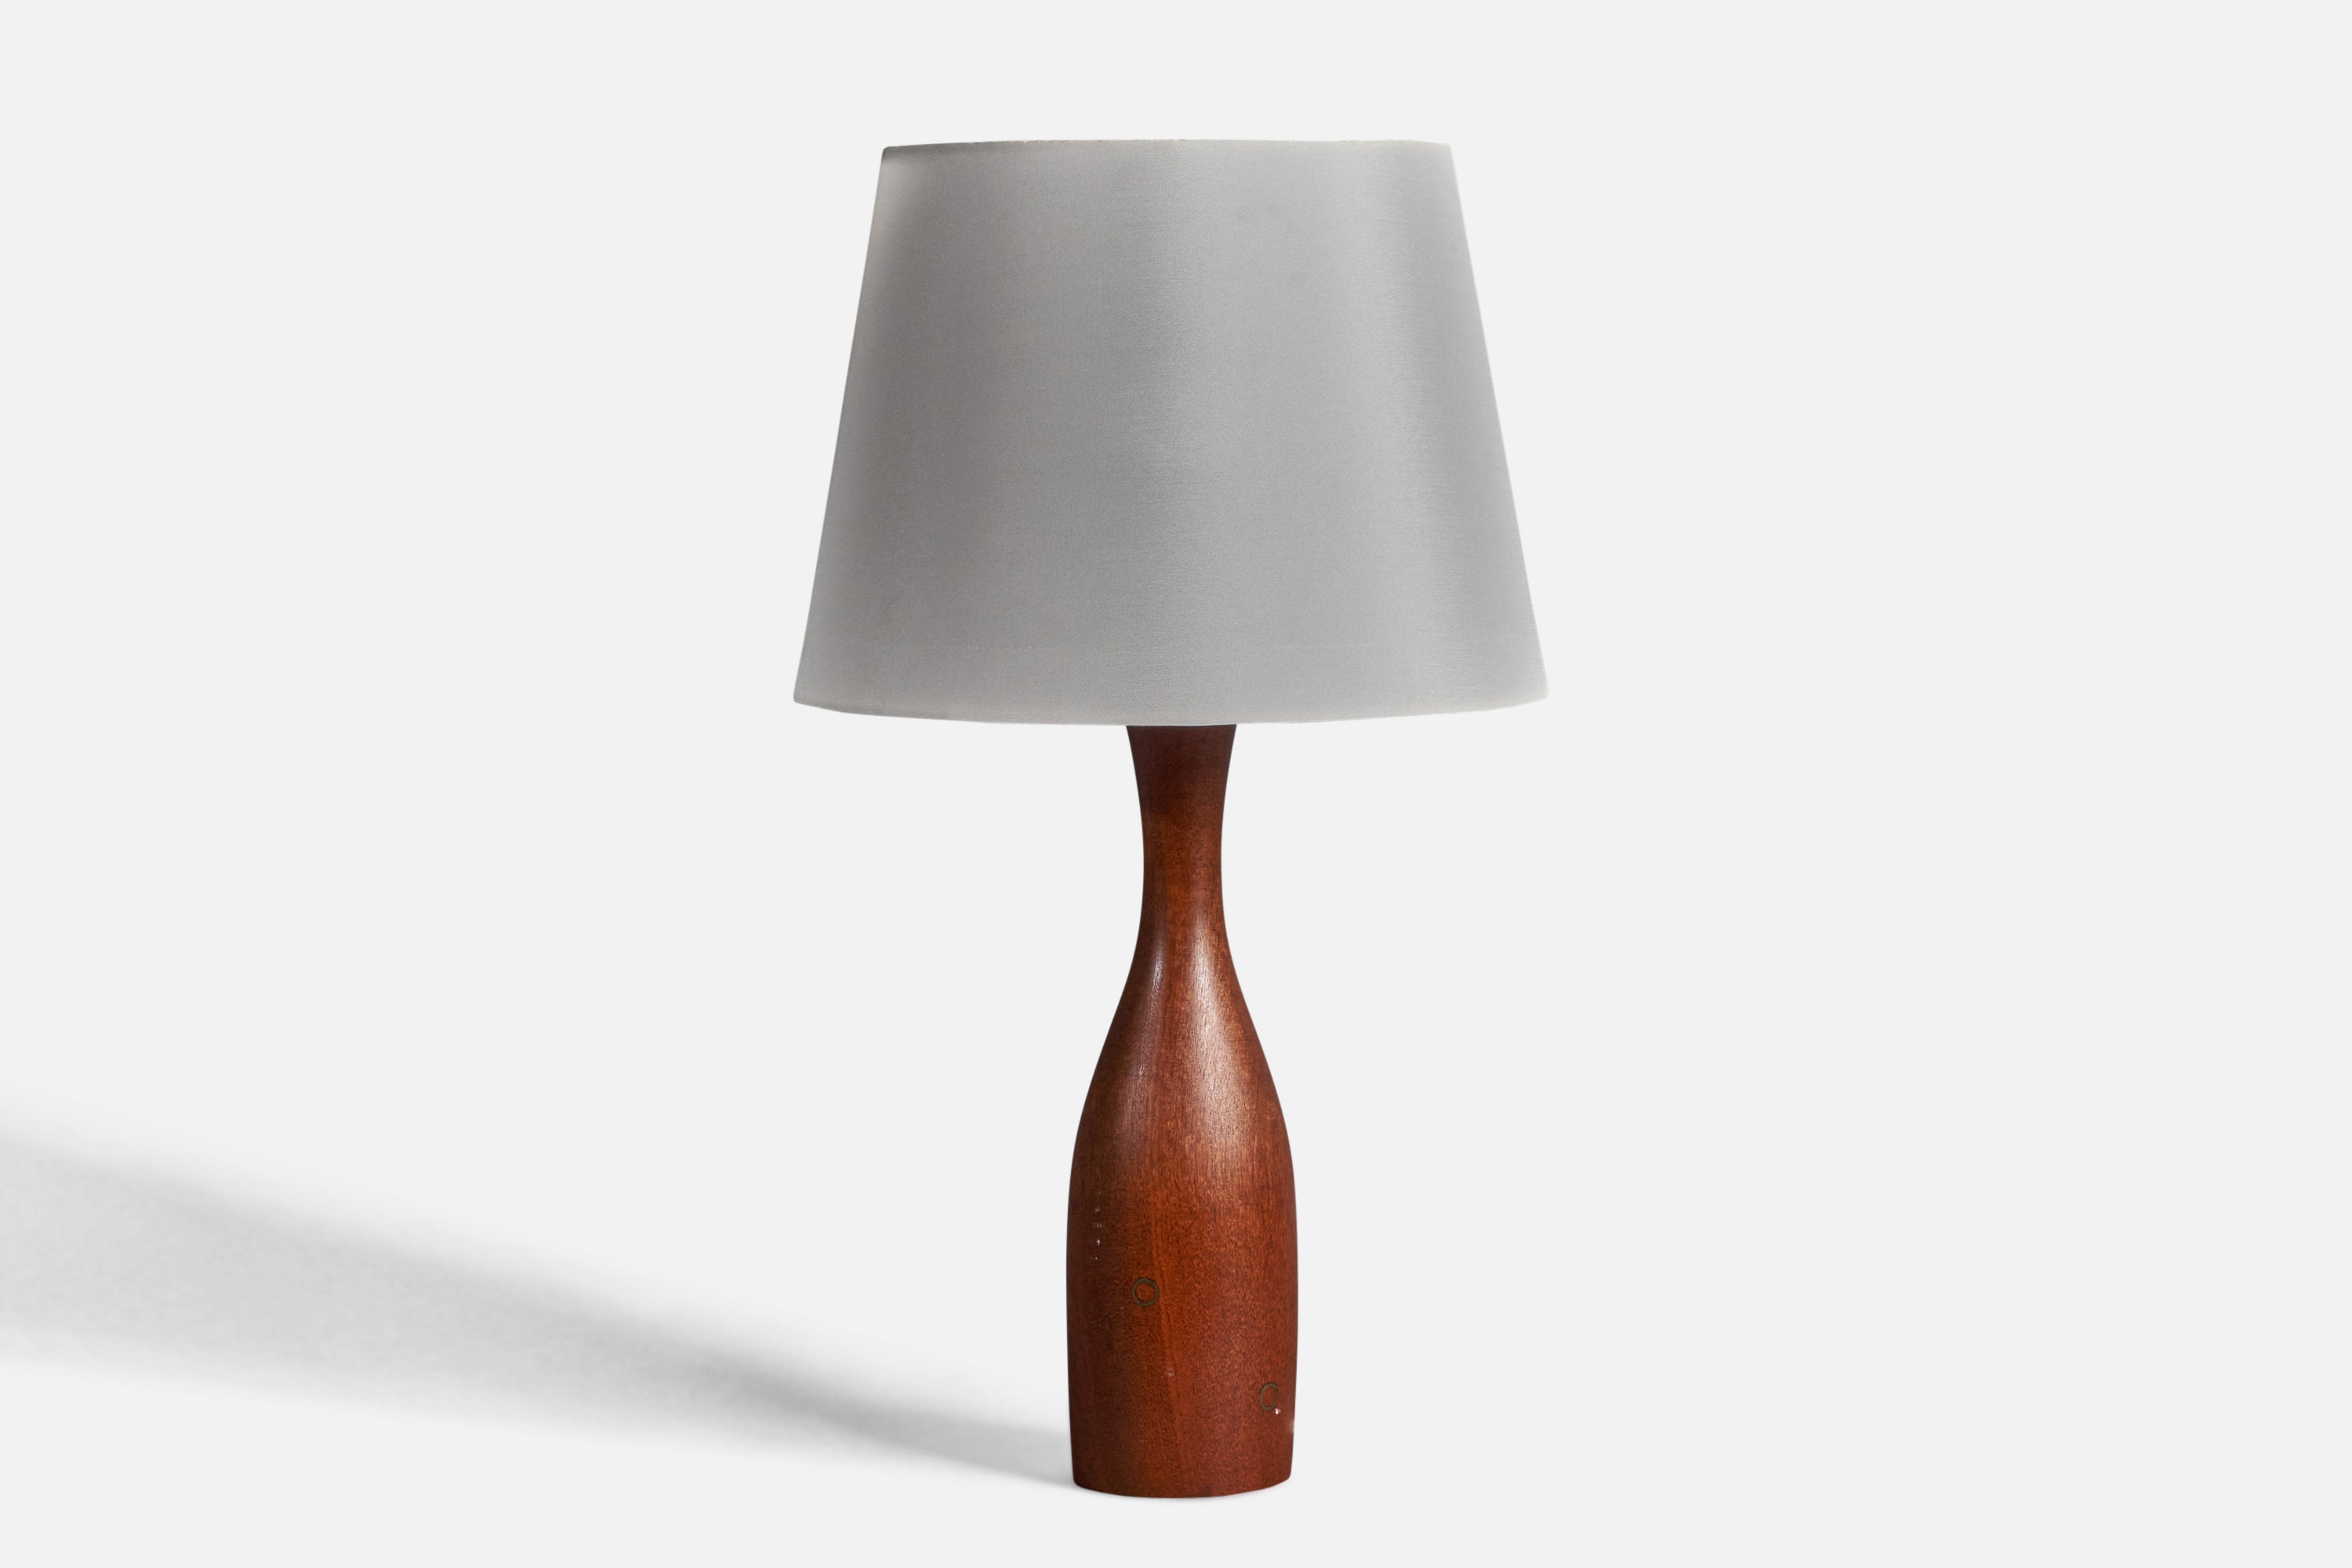 Danish Modernist Designer, Organic Table Lamp, Teak, Brass Inlays, Denmark 1950s